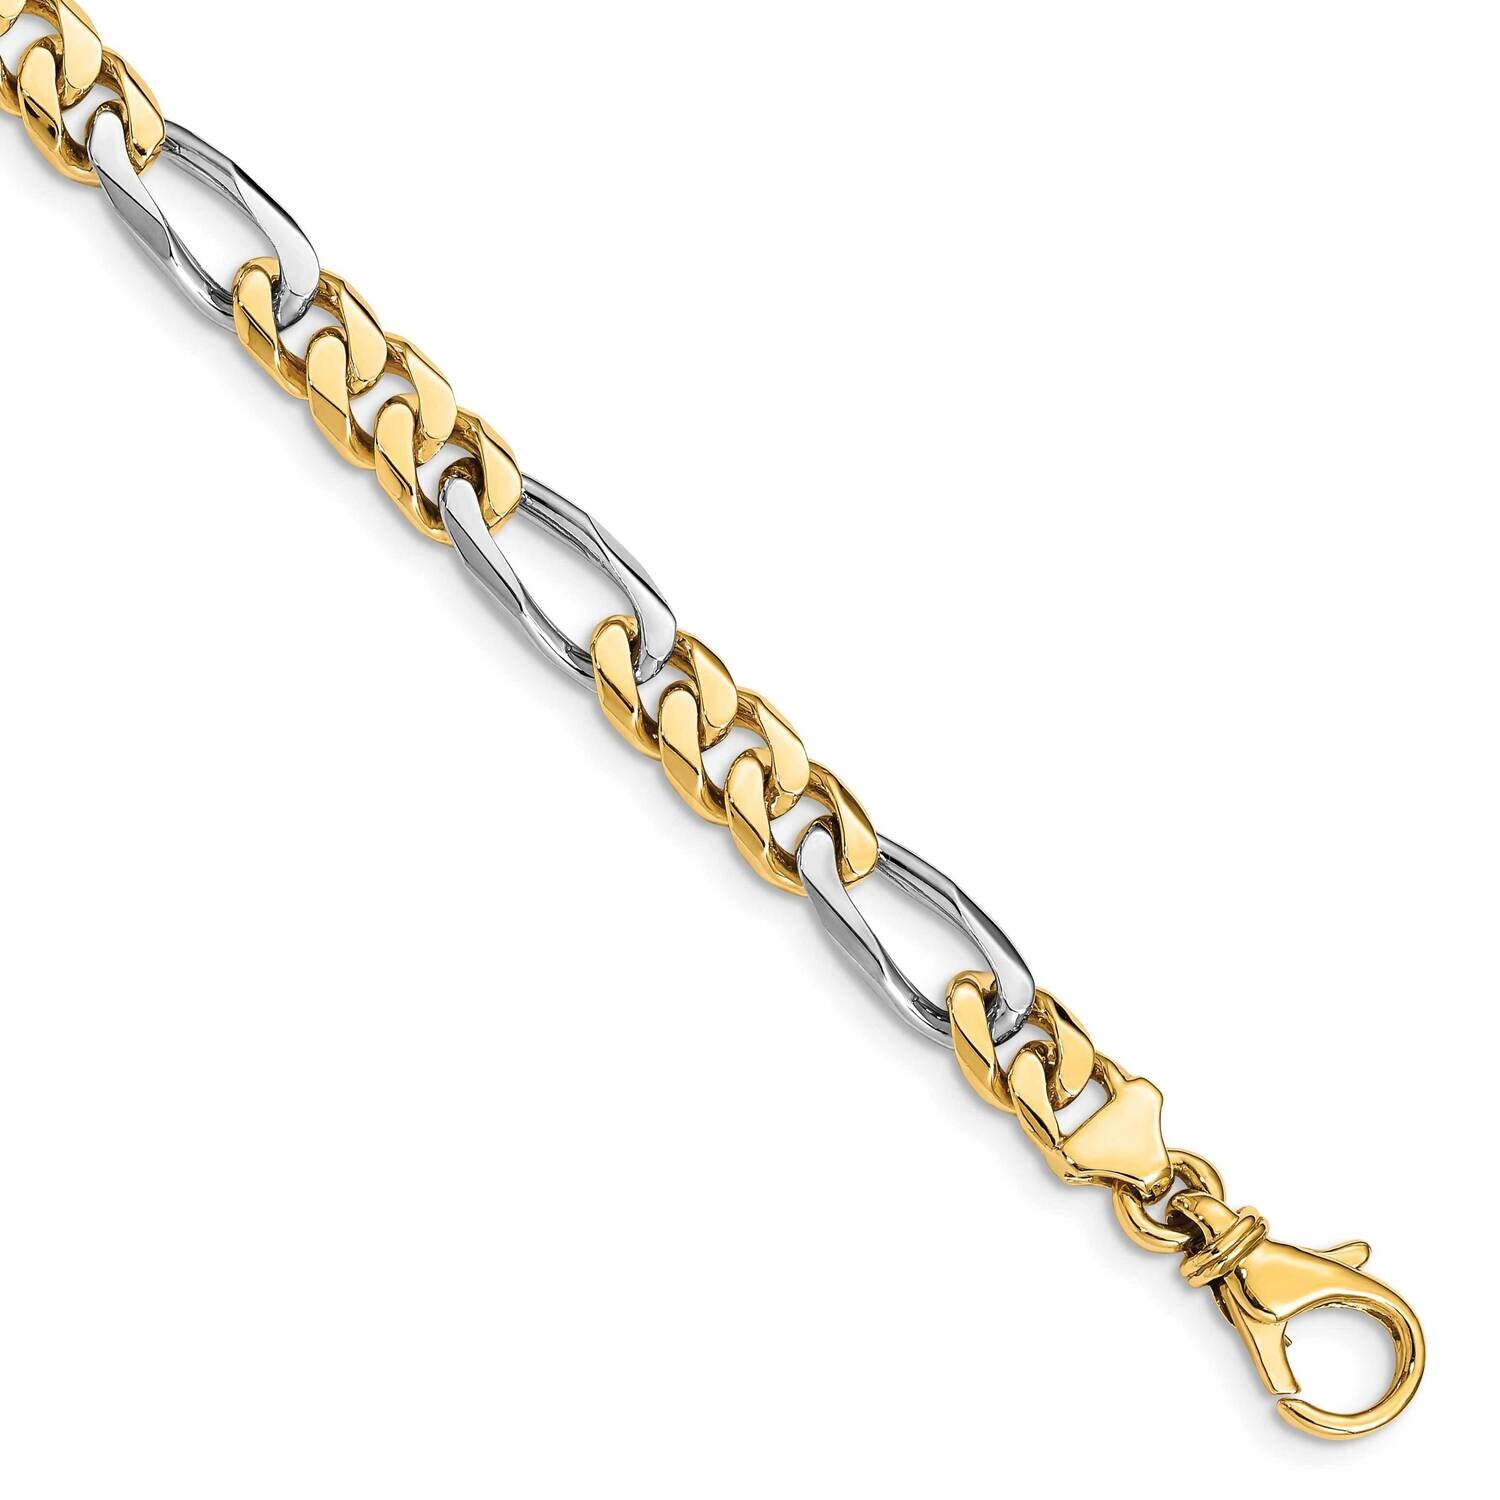 6.1mm Hand-Polished Fancy Link Bracelet 8 Inch 10k Two-Tone Gold 10LK488-8